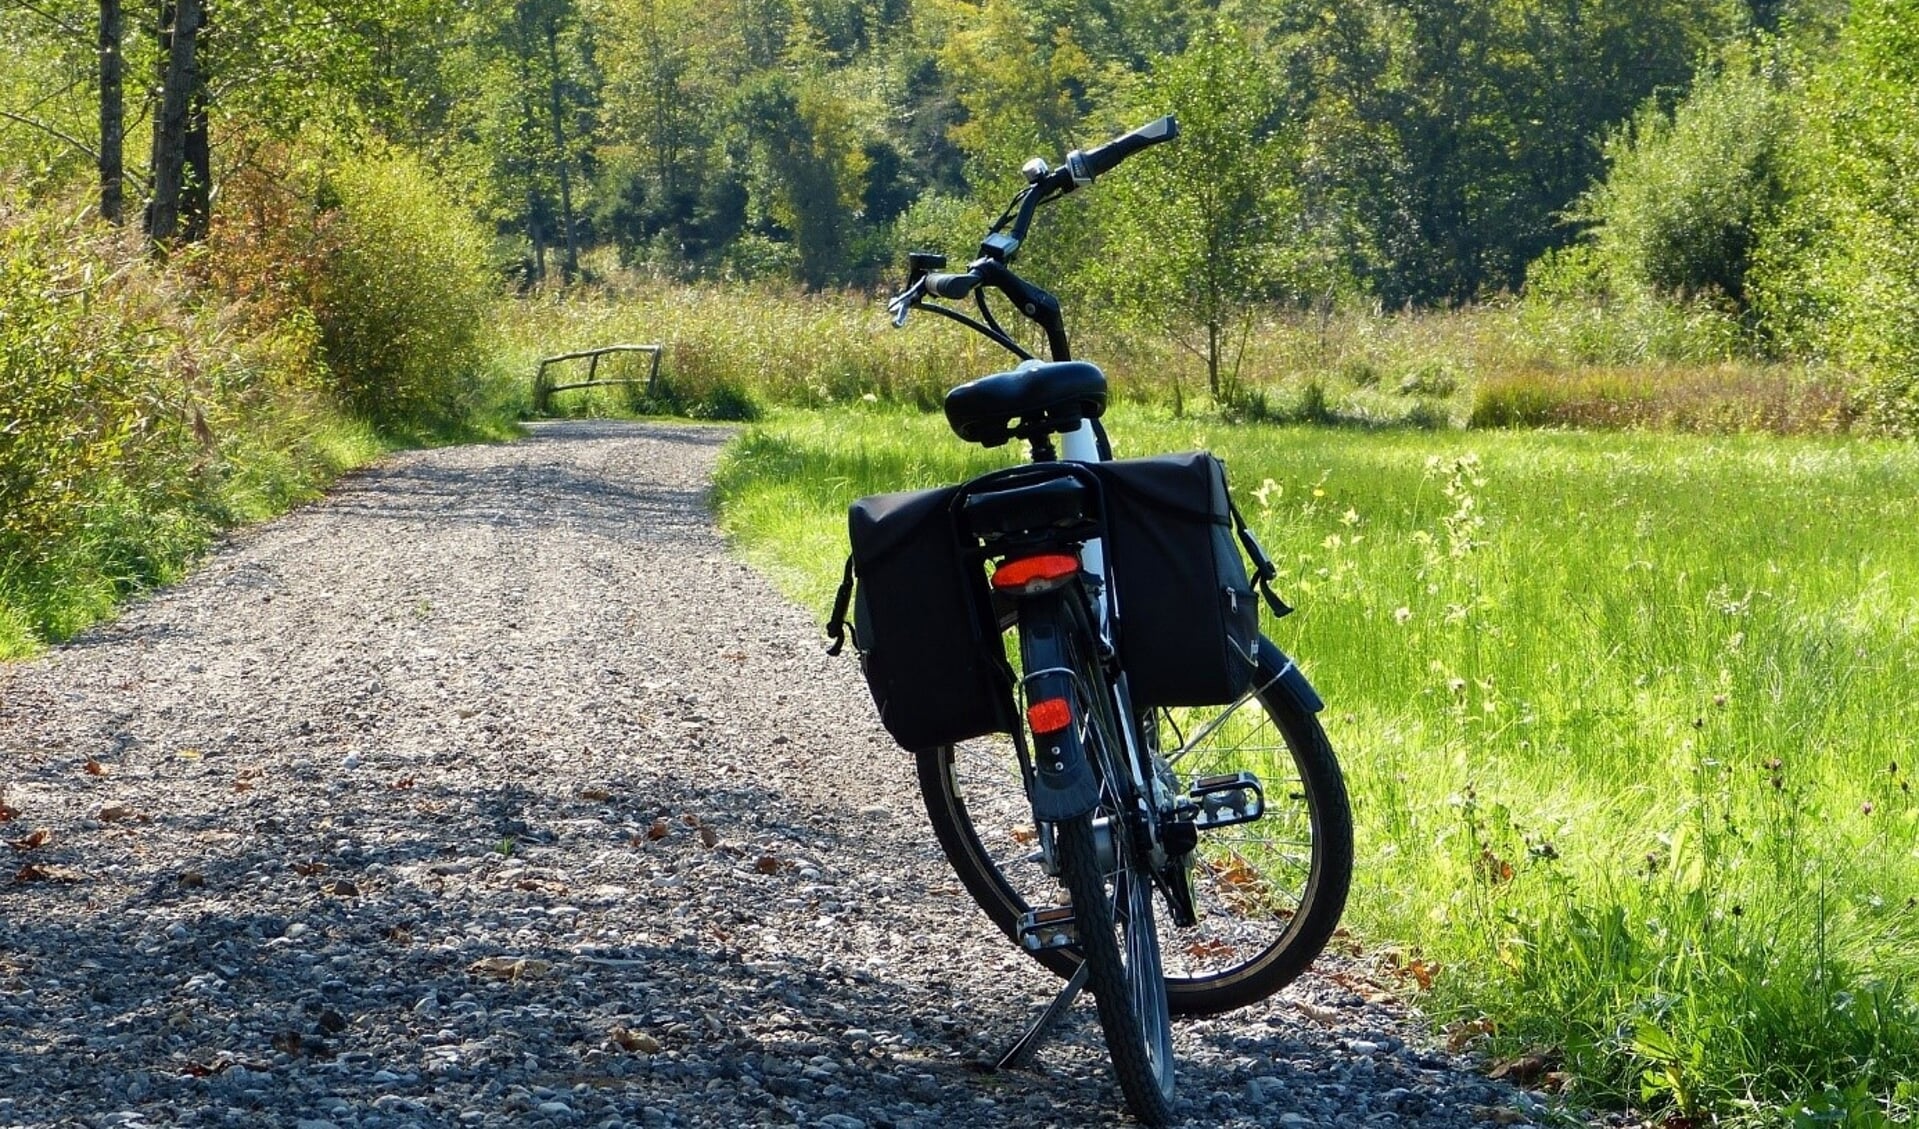 https://pixabay.com/photos/wheel-e-bike-path-forest-fall-3714047/